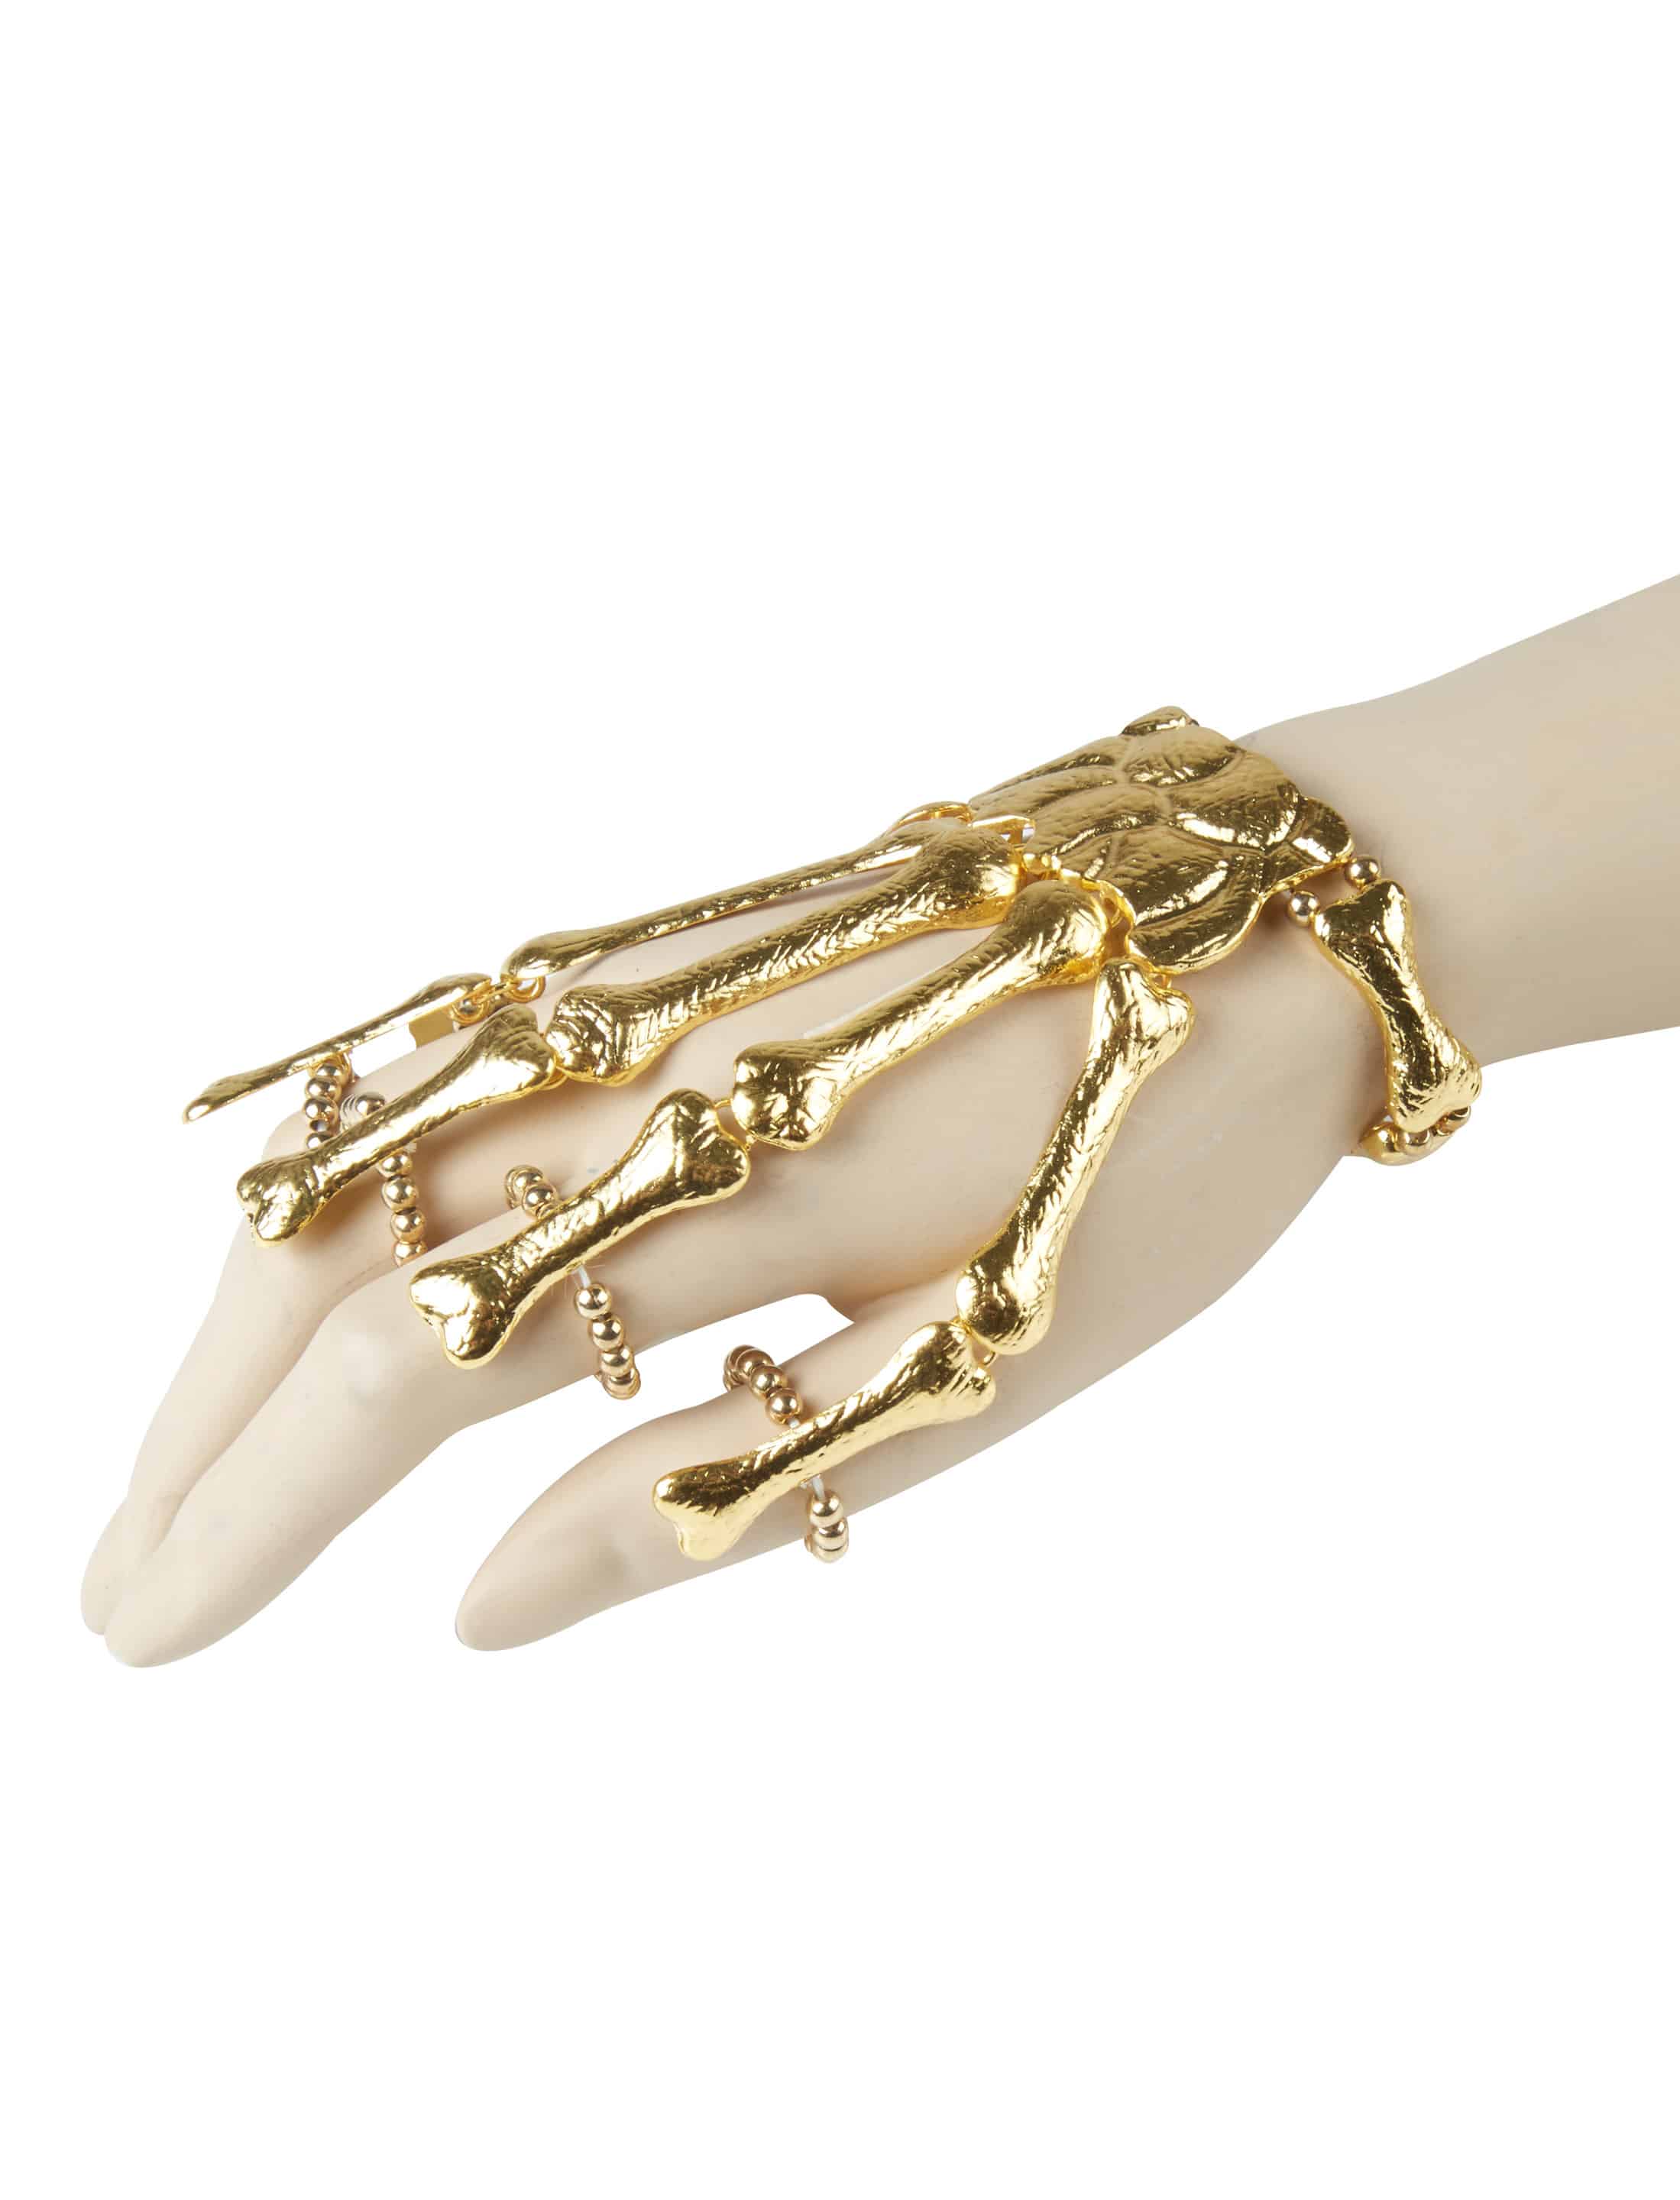 Handkette mit Knochen gold